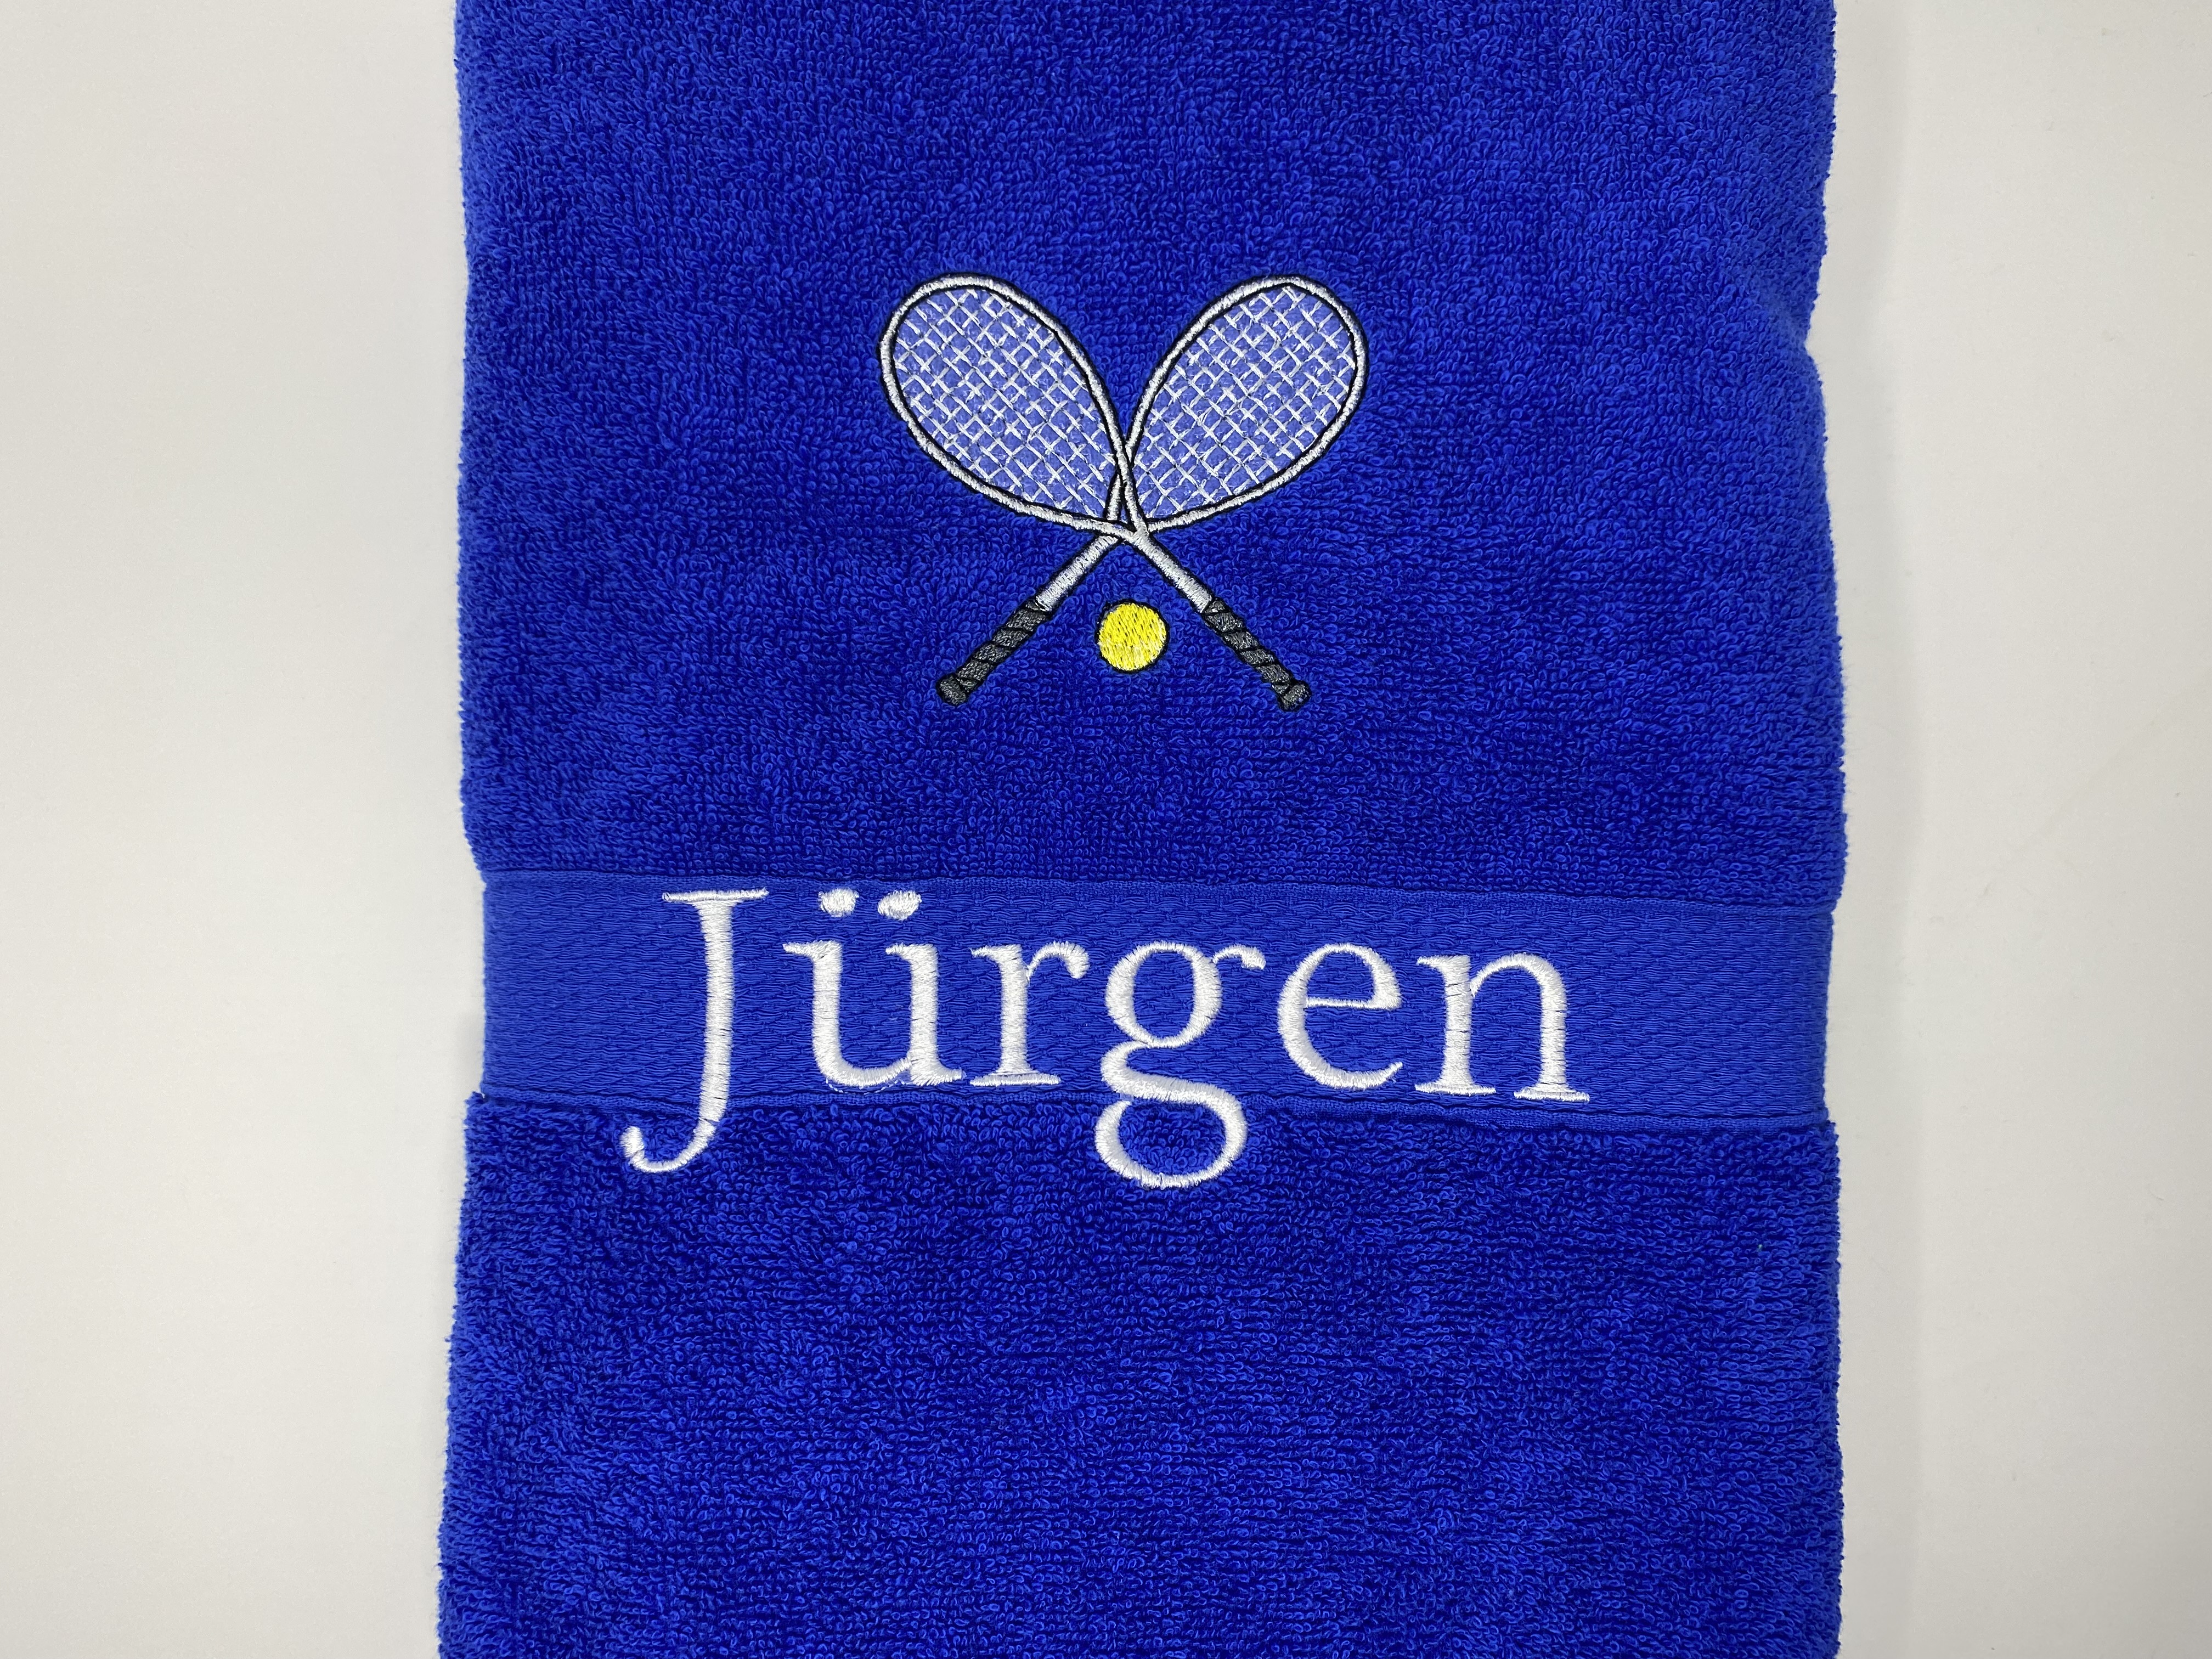 Tennis 08 Fitness Handtuch Duschtuch Stickerei & Personalisierung Super Qualität 